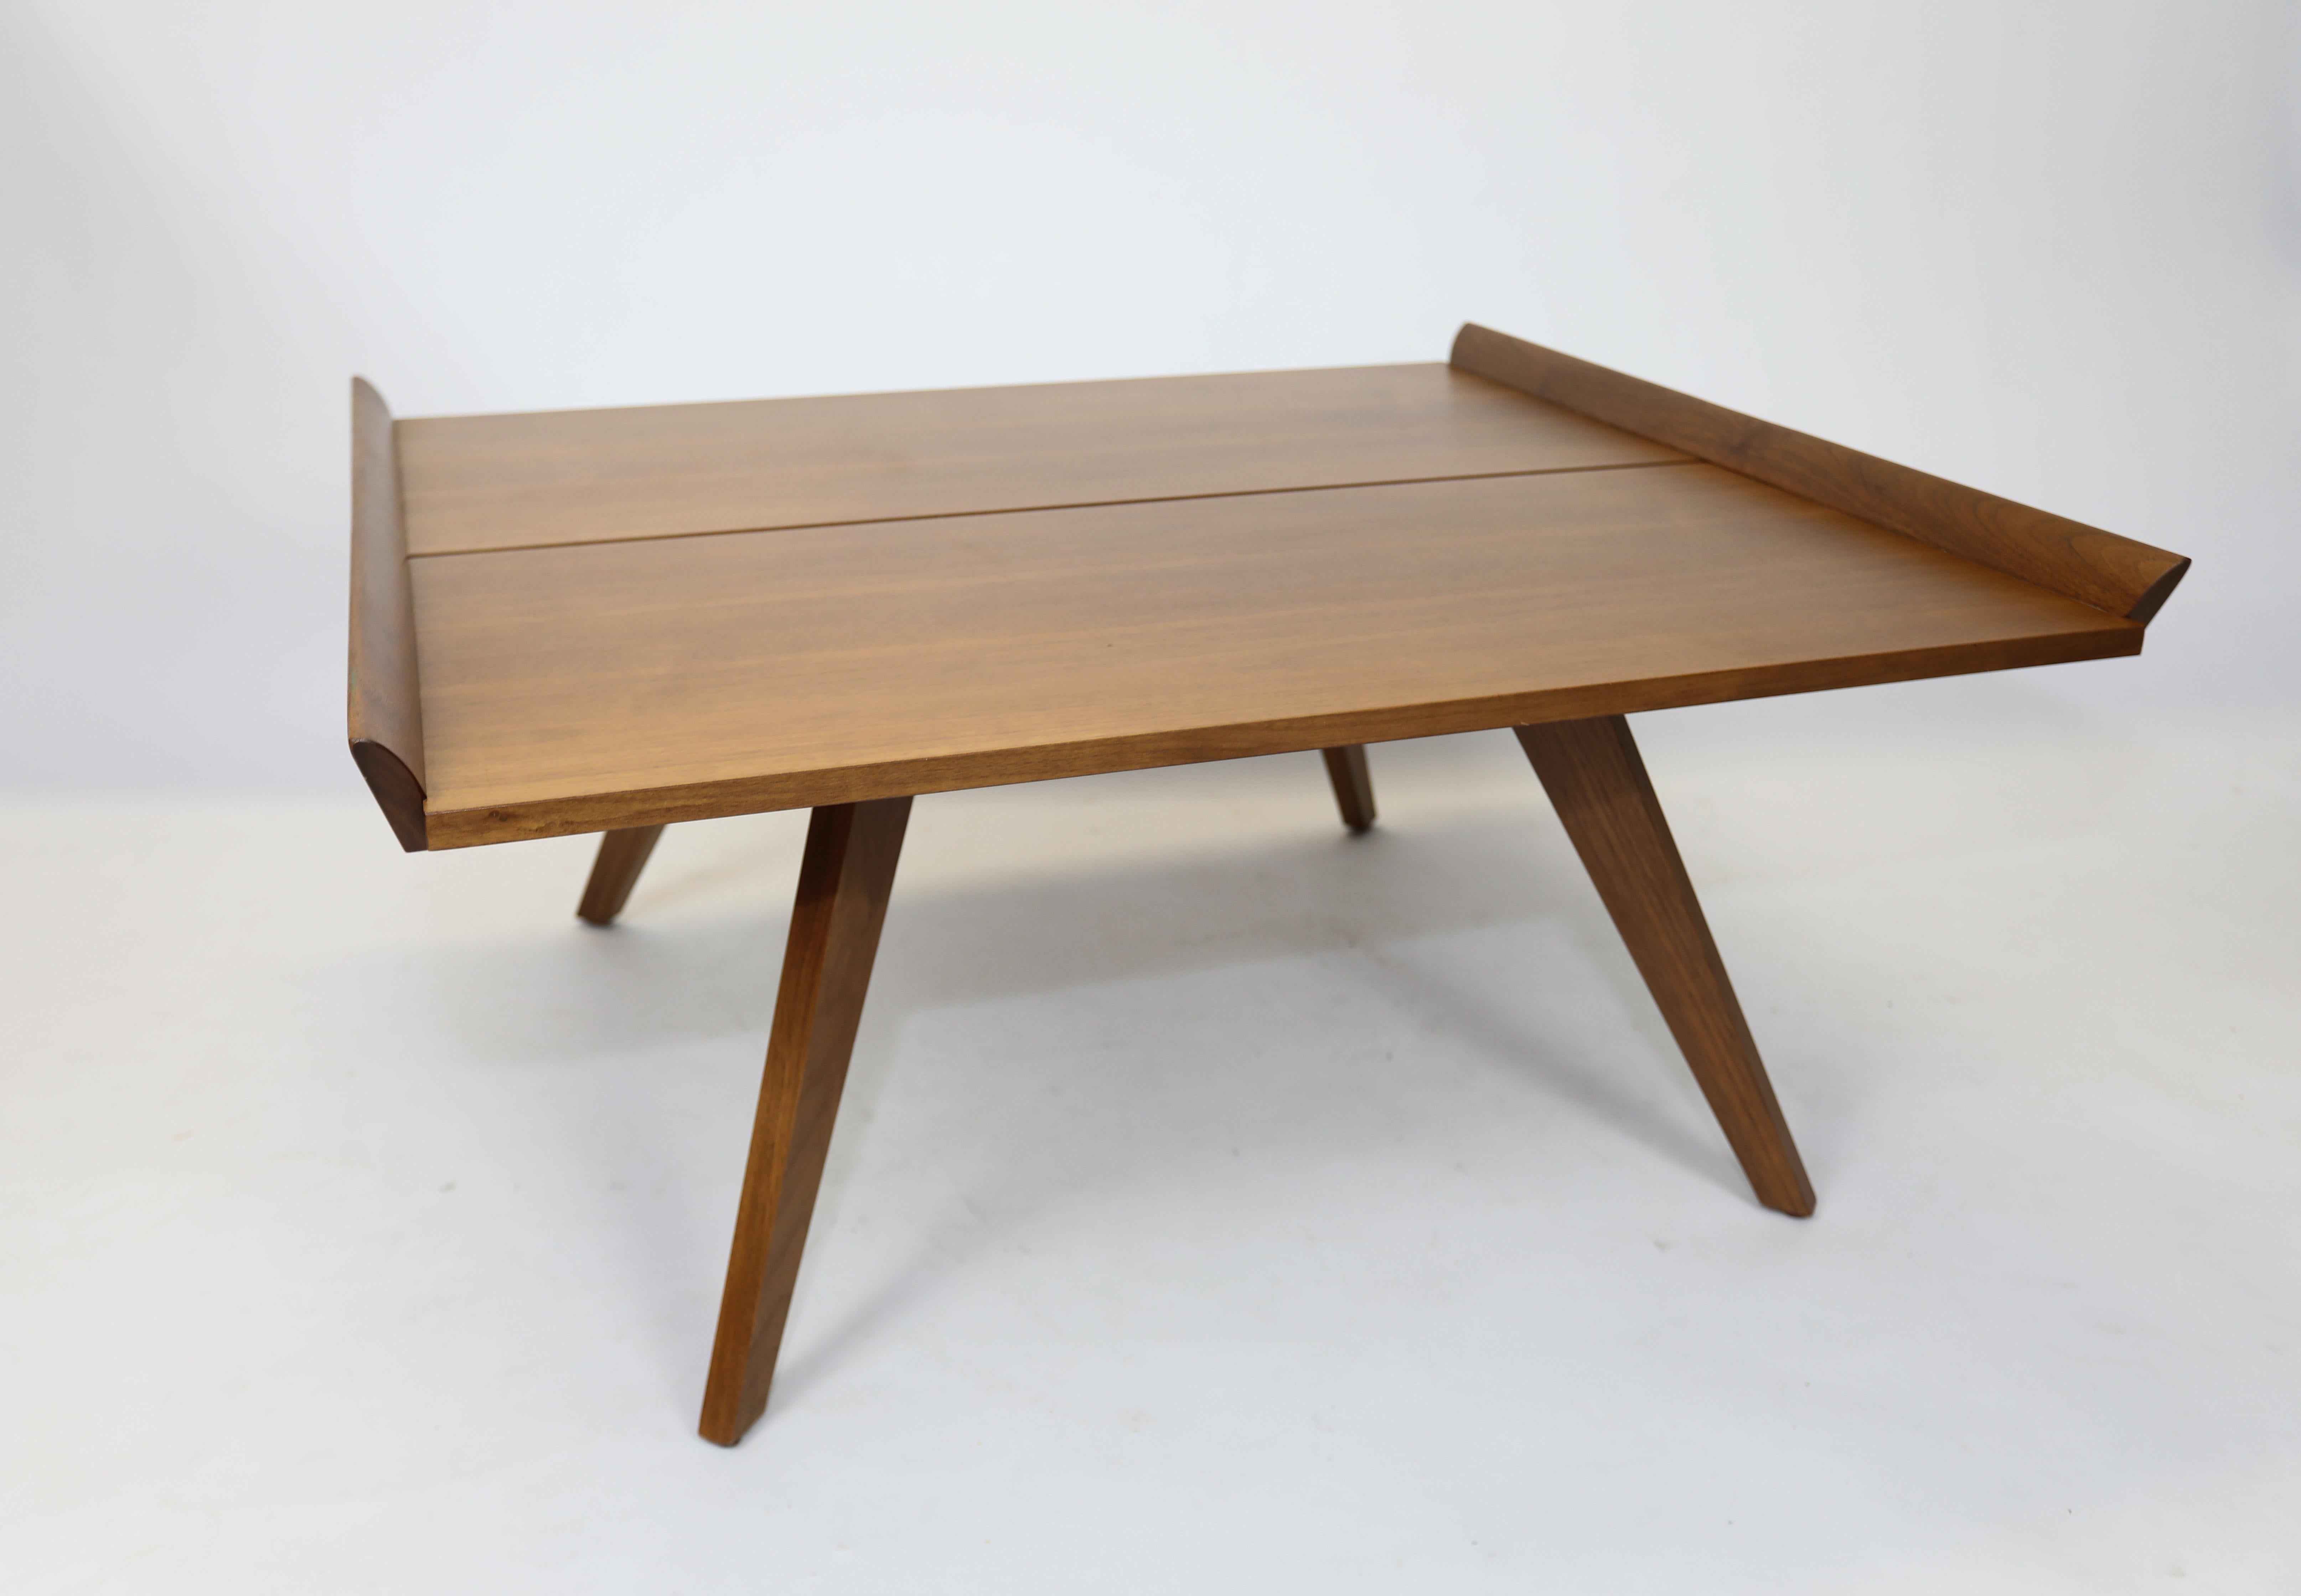 La table N-10 a été vendue à l'origine par Knoll dans les années 1940 et abandonnée en 1955.
Cet exemple provient de la réintroduction en 2008.